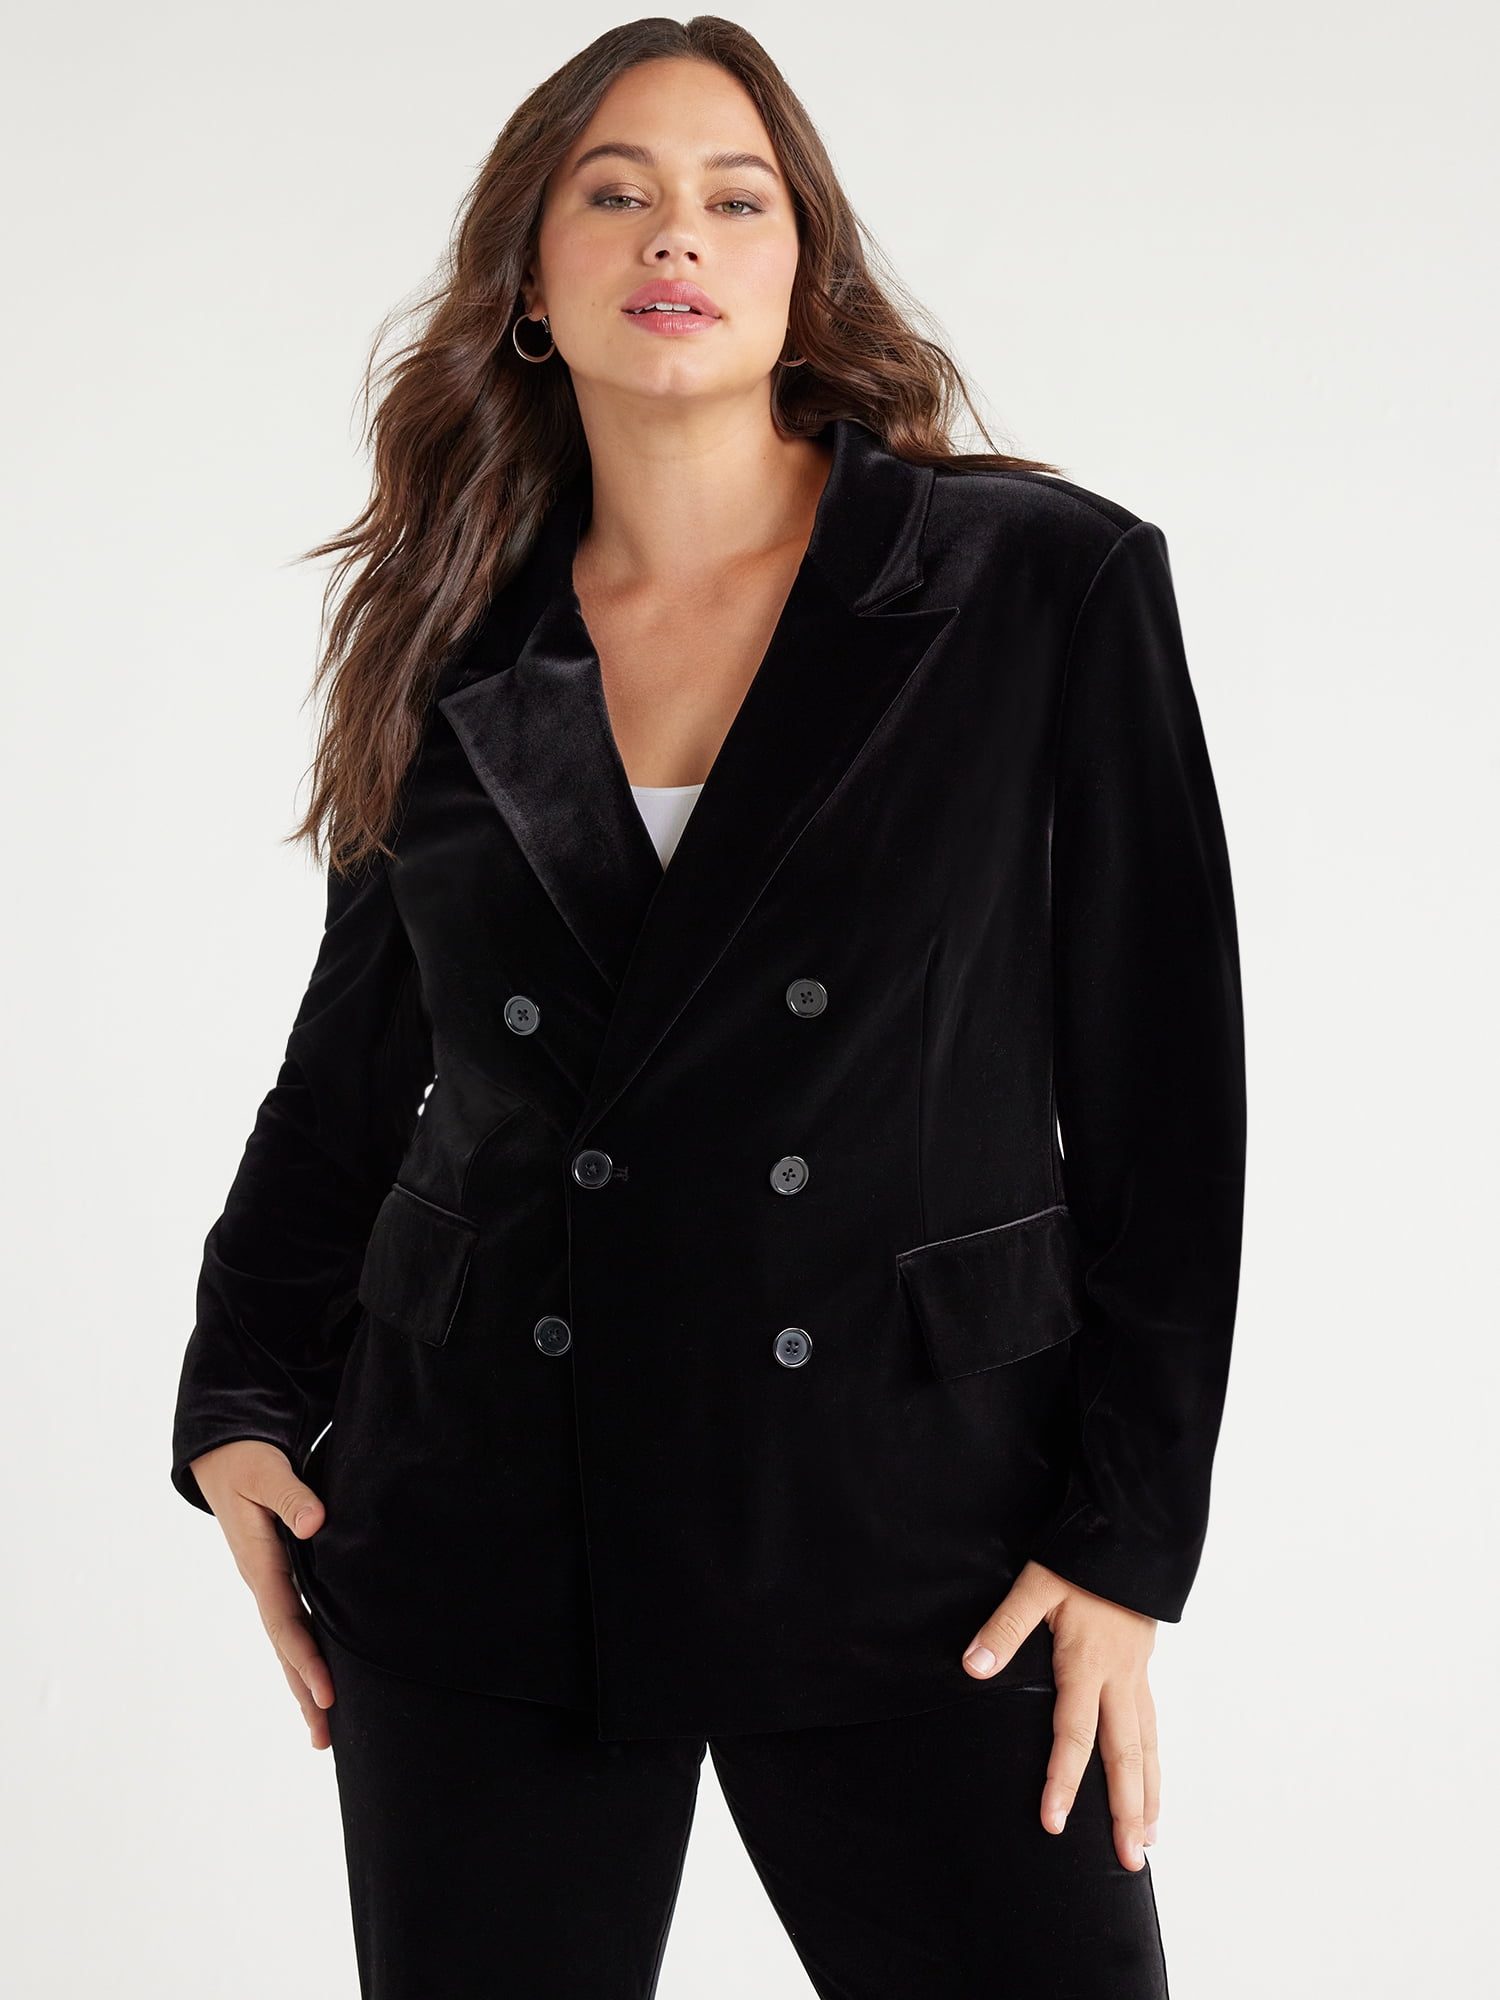 Agnes Orinda Plus Size Women's Velvet Blazers Casual Lapel Suit Jackets One  Button Party Blazer